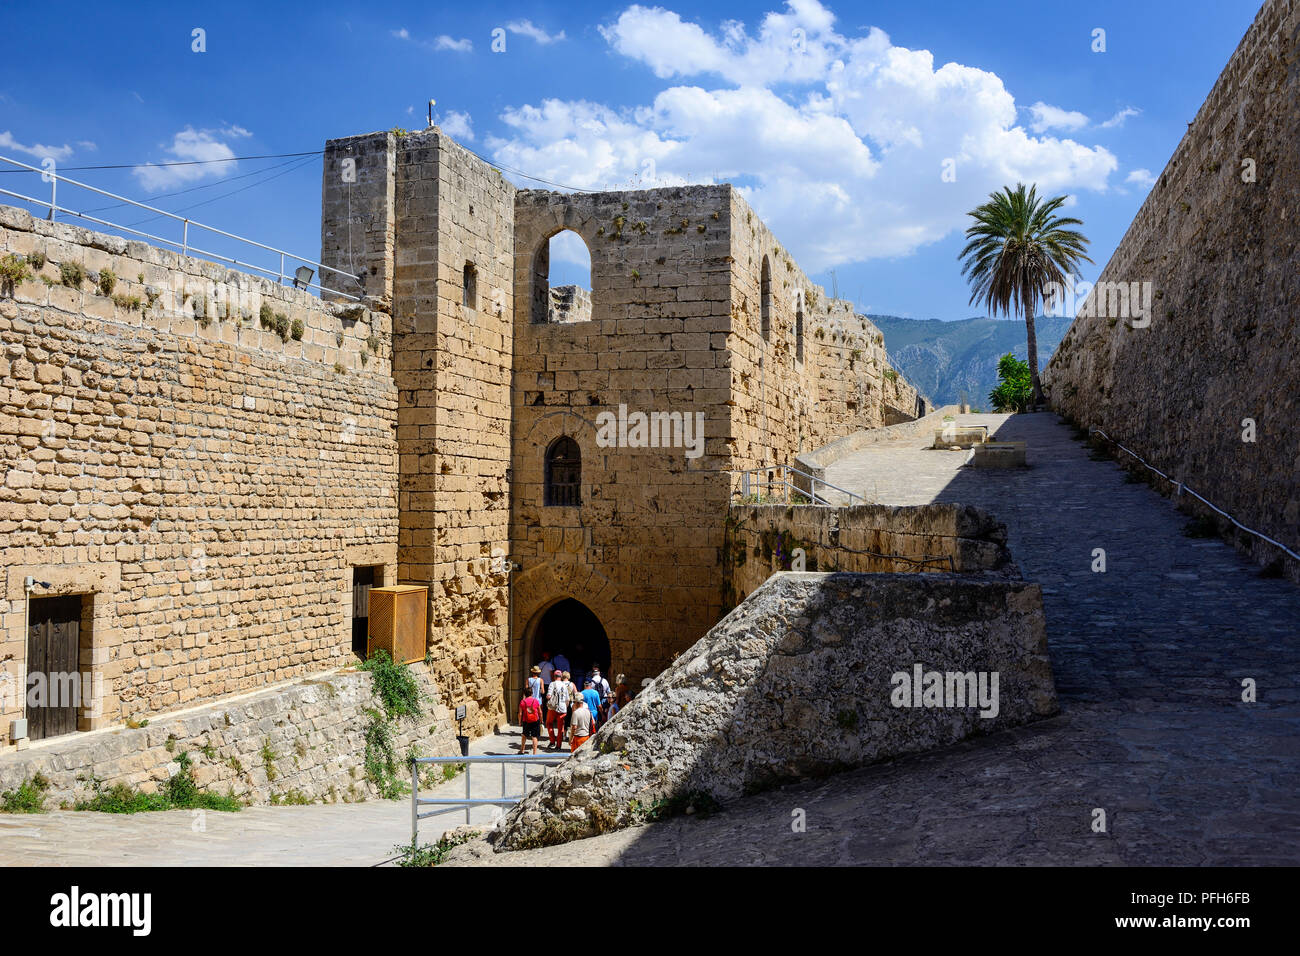 Entrada al castillo de Kyrenia visto desde la torre veneciana, Kyrenia (Girne), República turca del norte de Chipre Foto de stock